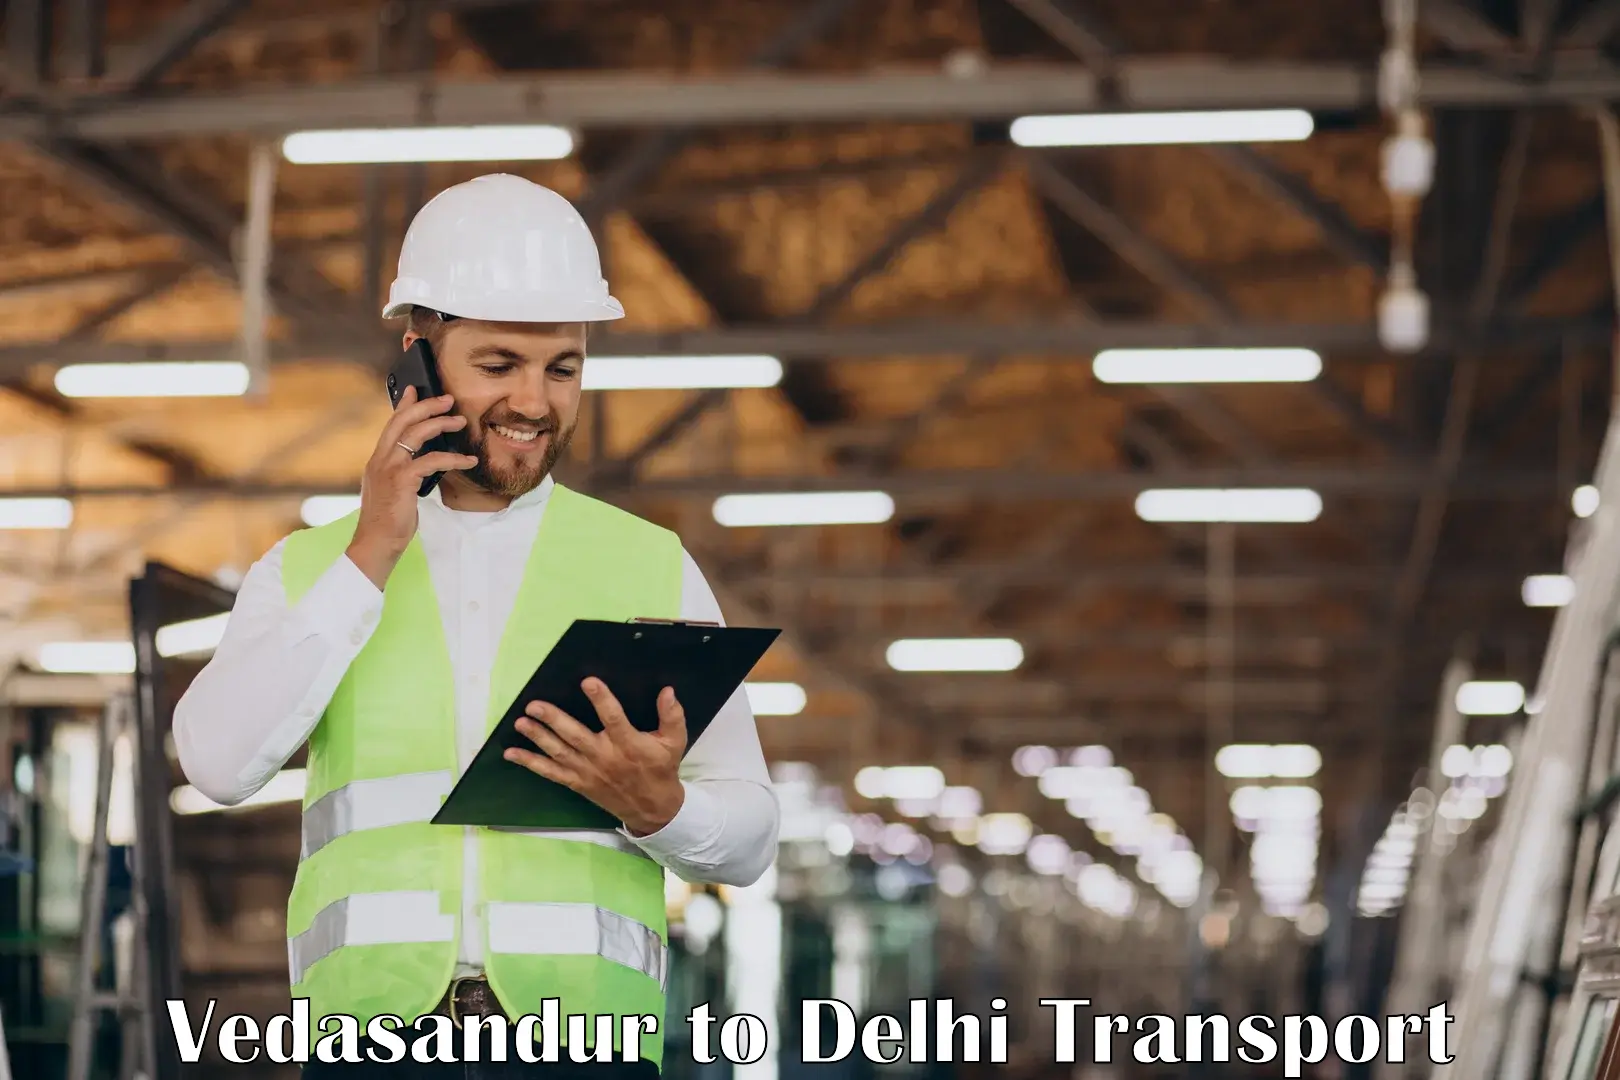 Nearby transport service Vedasandur to Delhi